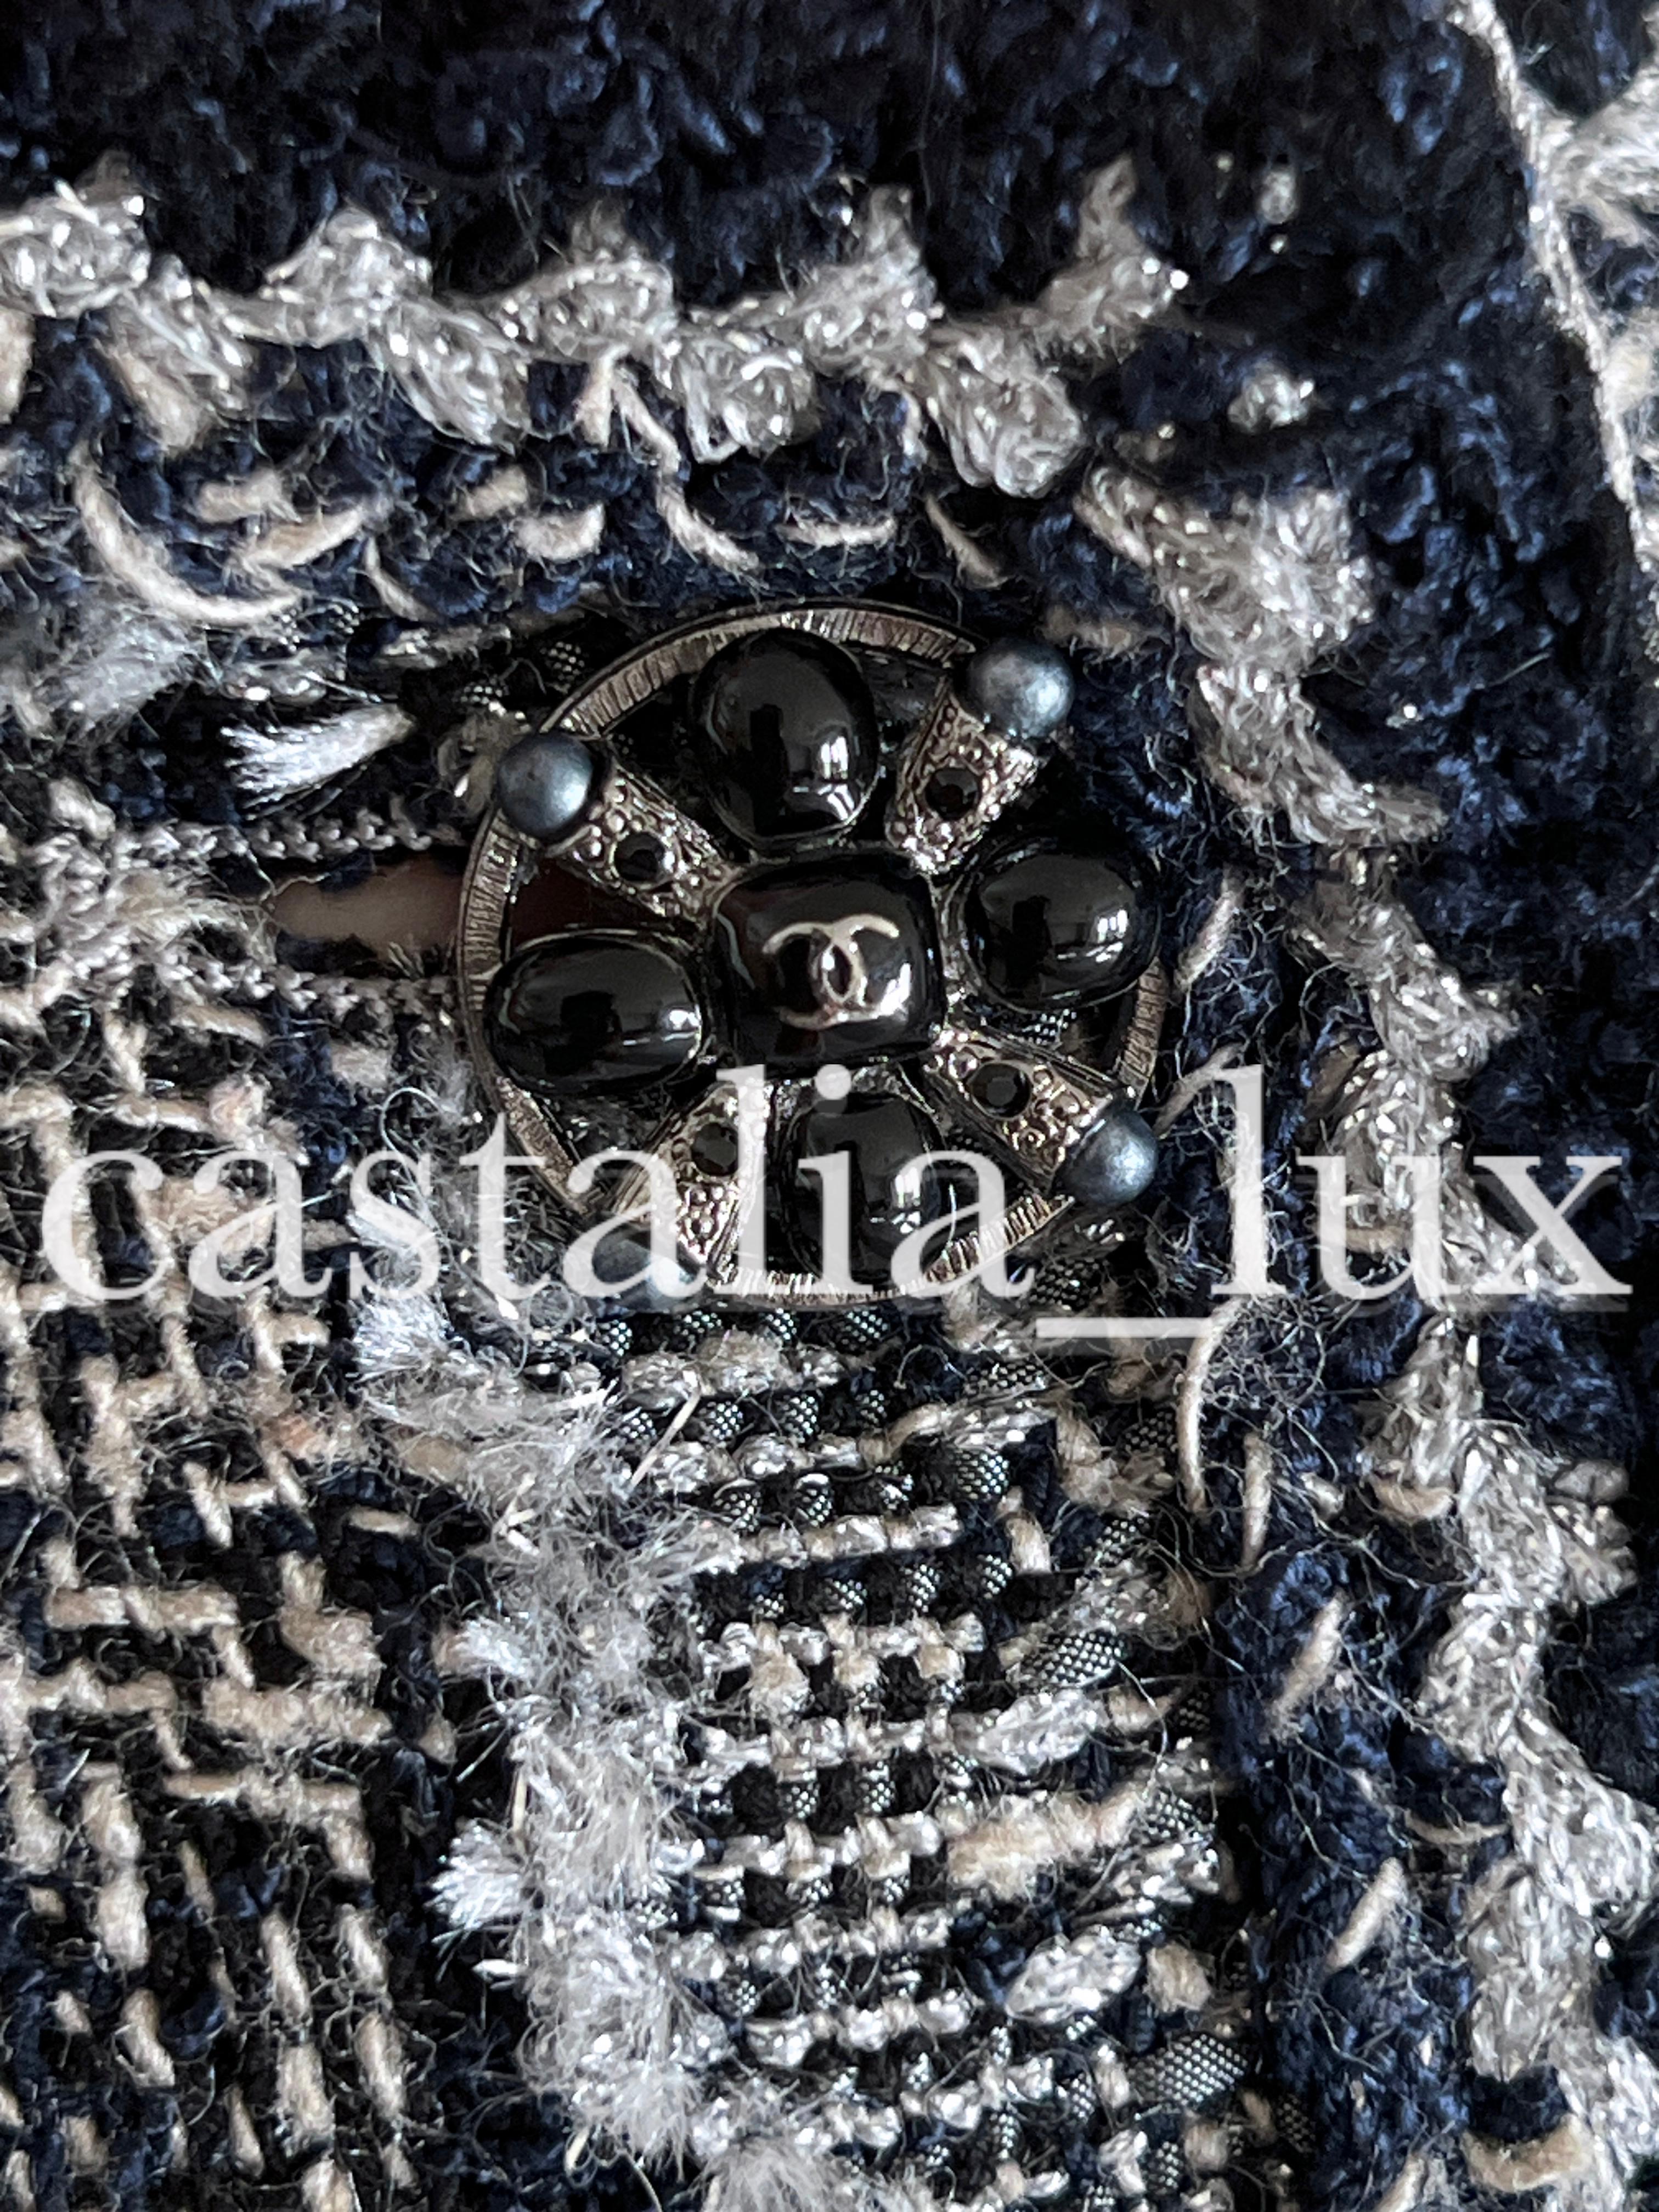 Absolument magnifique veste en tweed Lesage de Chanel avec Camélias de Paris / Collection &New, Metiers d'Art
Le prix de vente au détail était de plus de 9 000 $.
Taille 46 fr. Jamais porté !
Des détails dignes d'un chef-d'œuvre, comme on peut s'y